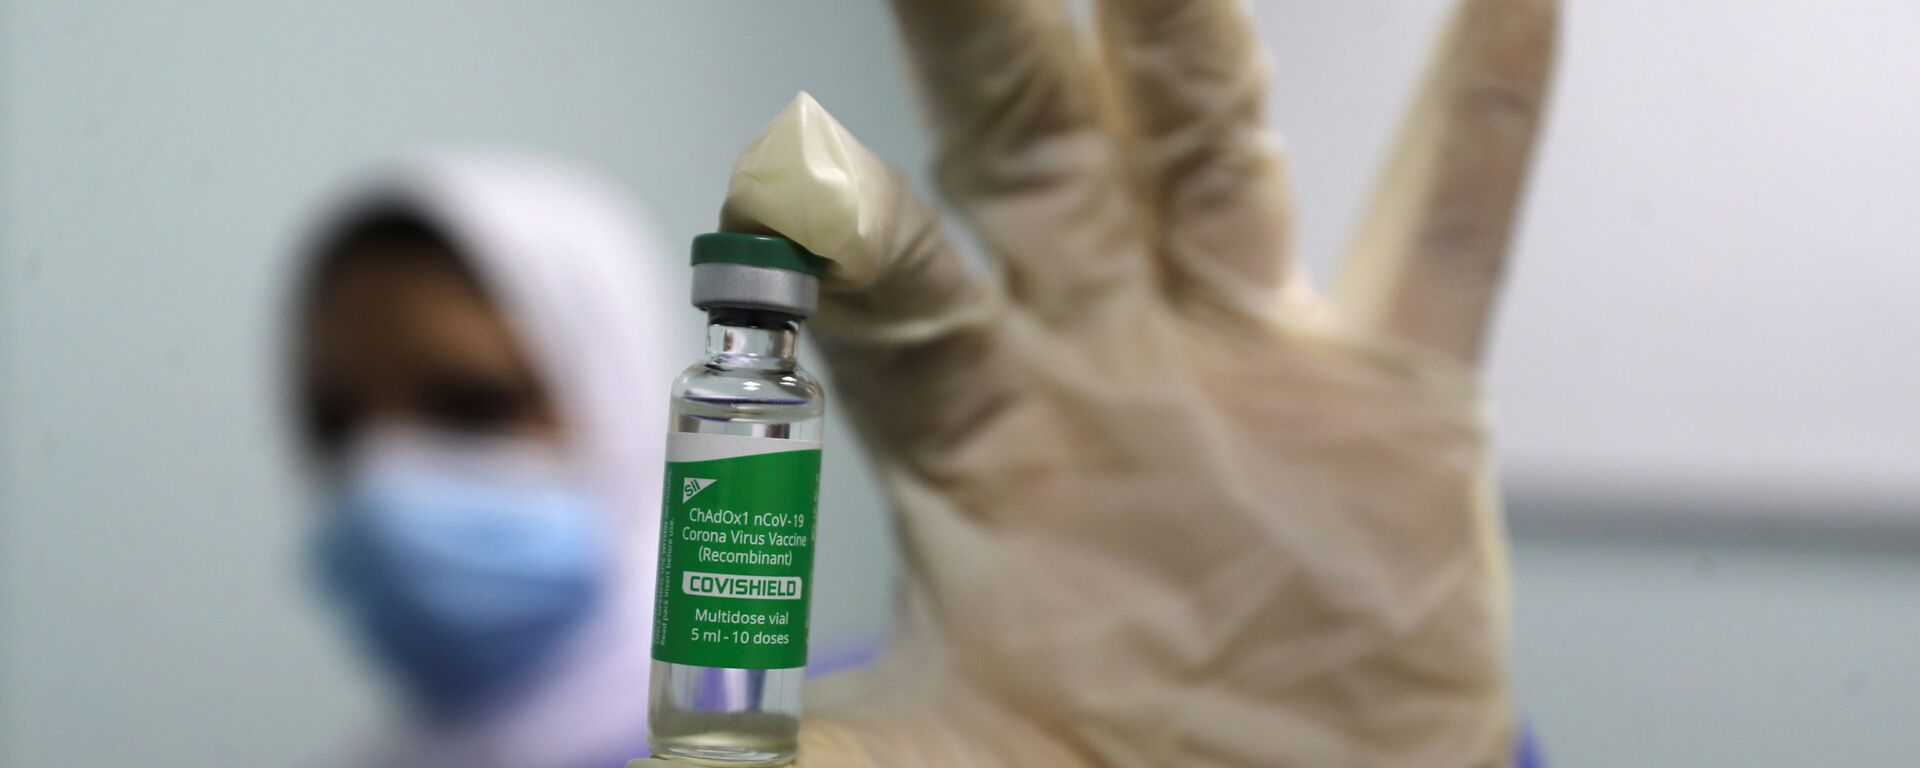 بدء تطعيم واسع النطاق في مصر ضد فيروس كورونا (كوفيد-19)، القاهرة، 4 مارس 2021 - سبوتنيك عربي, 1920, 22.03.2021